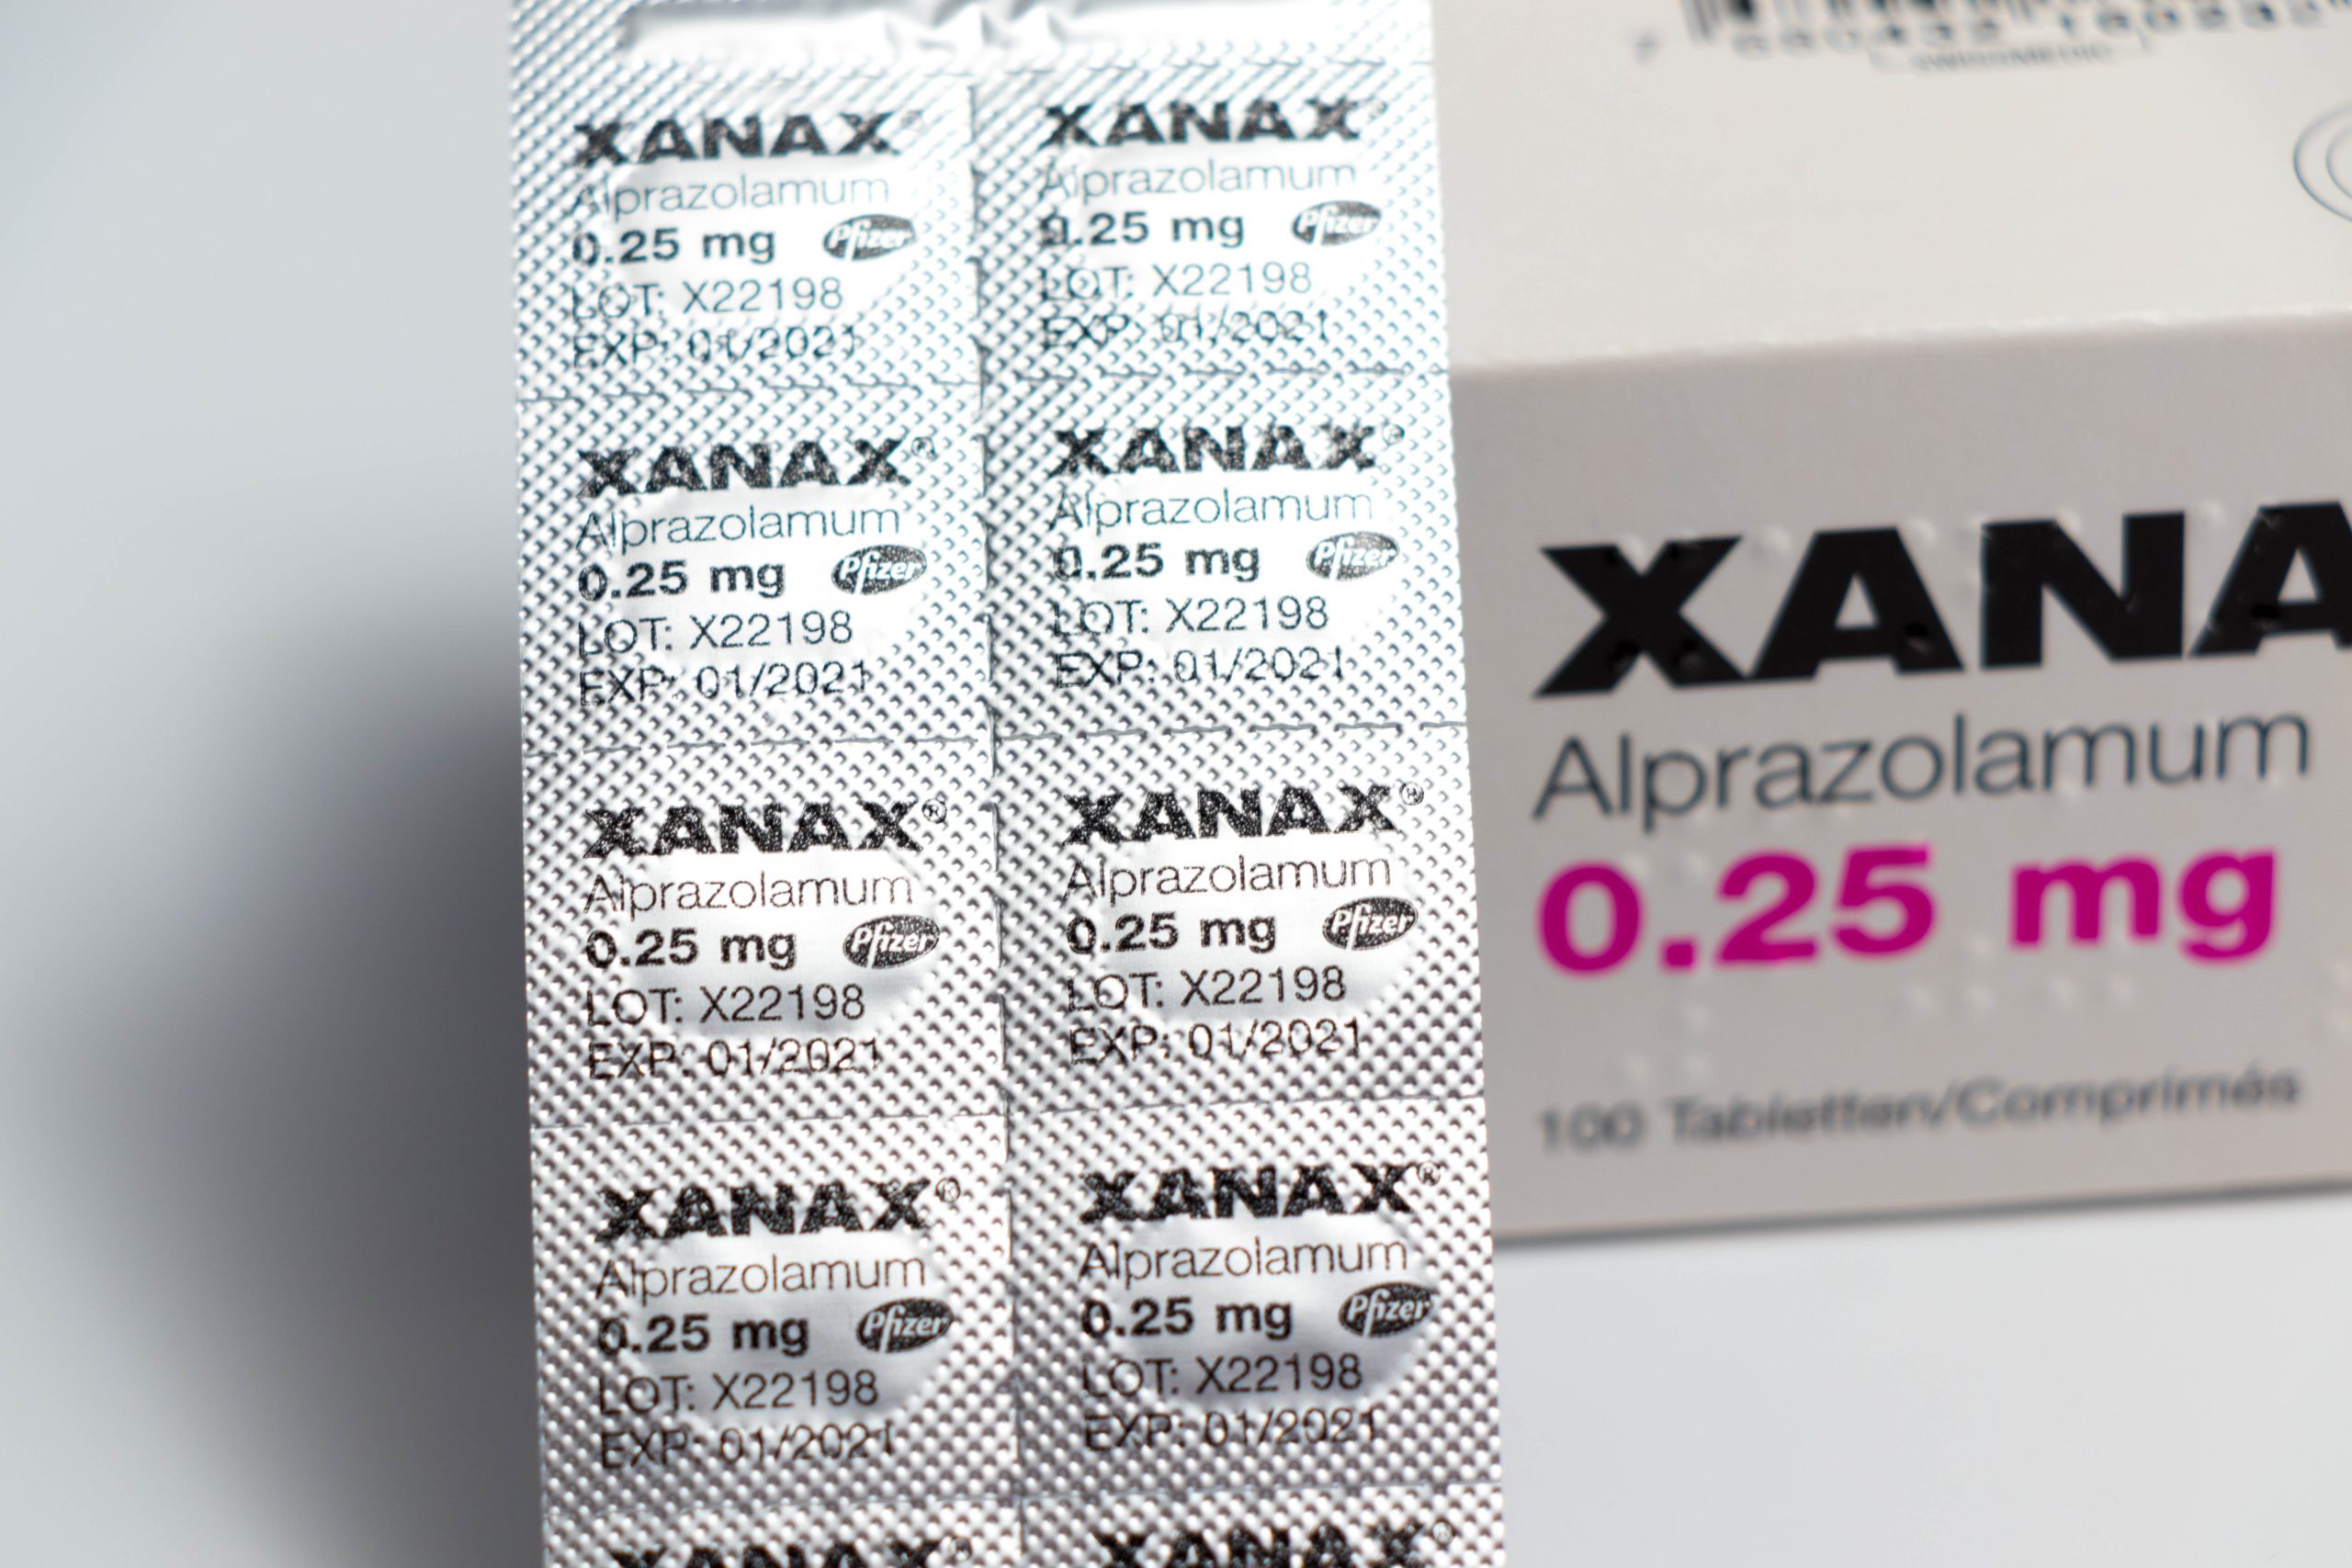 Is Xanax Addictive?